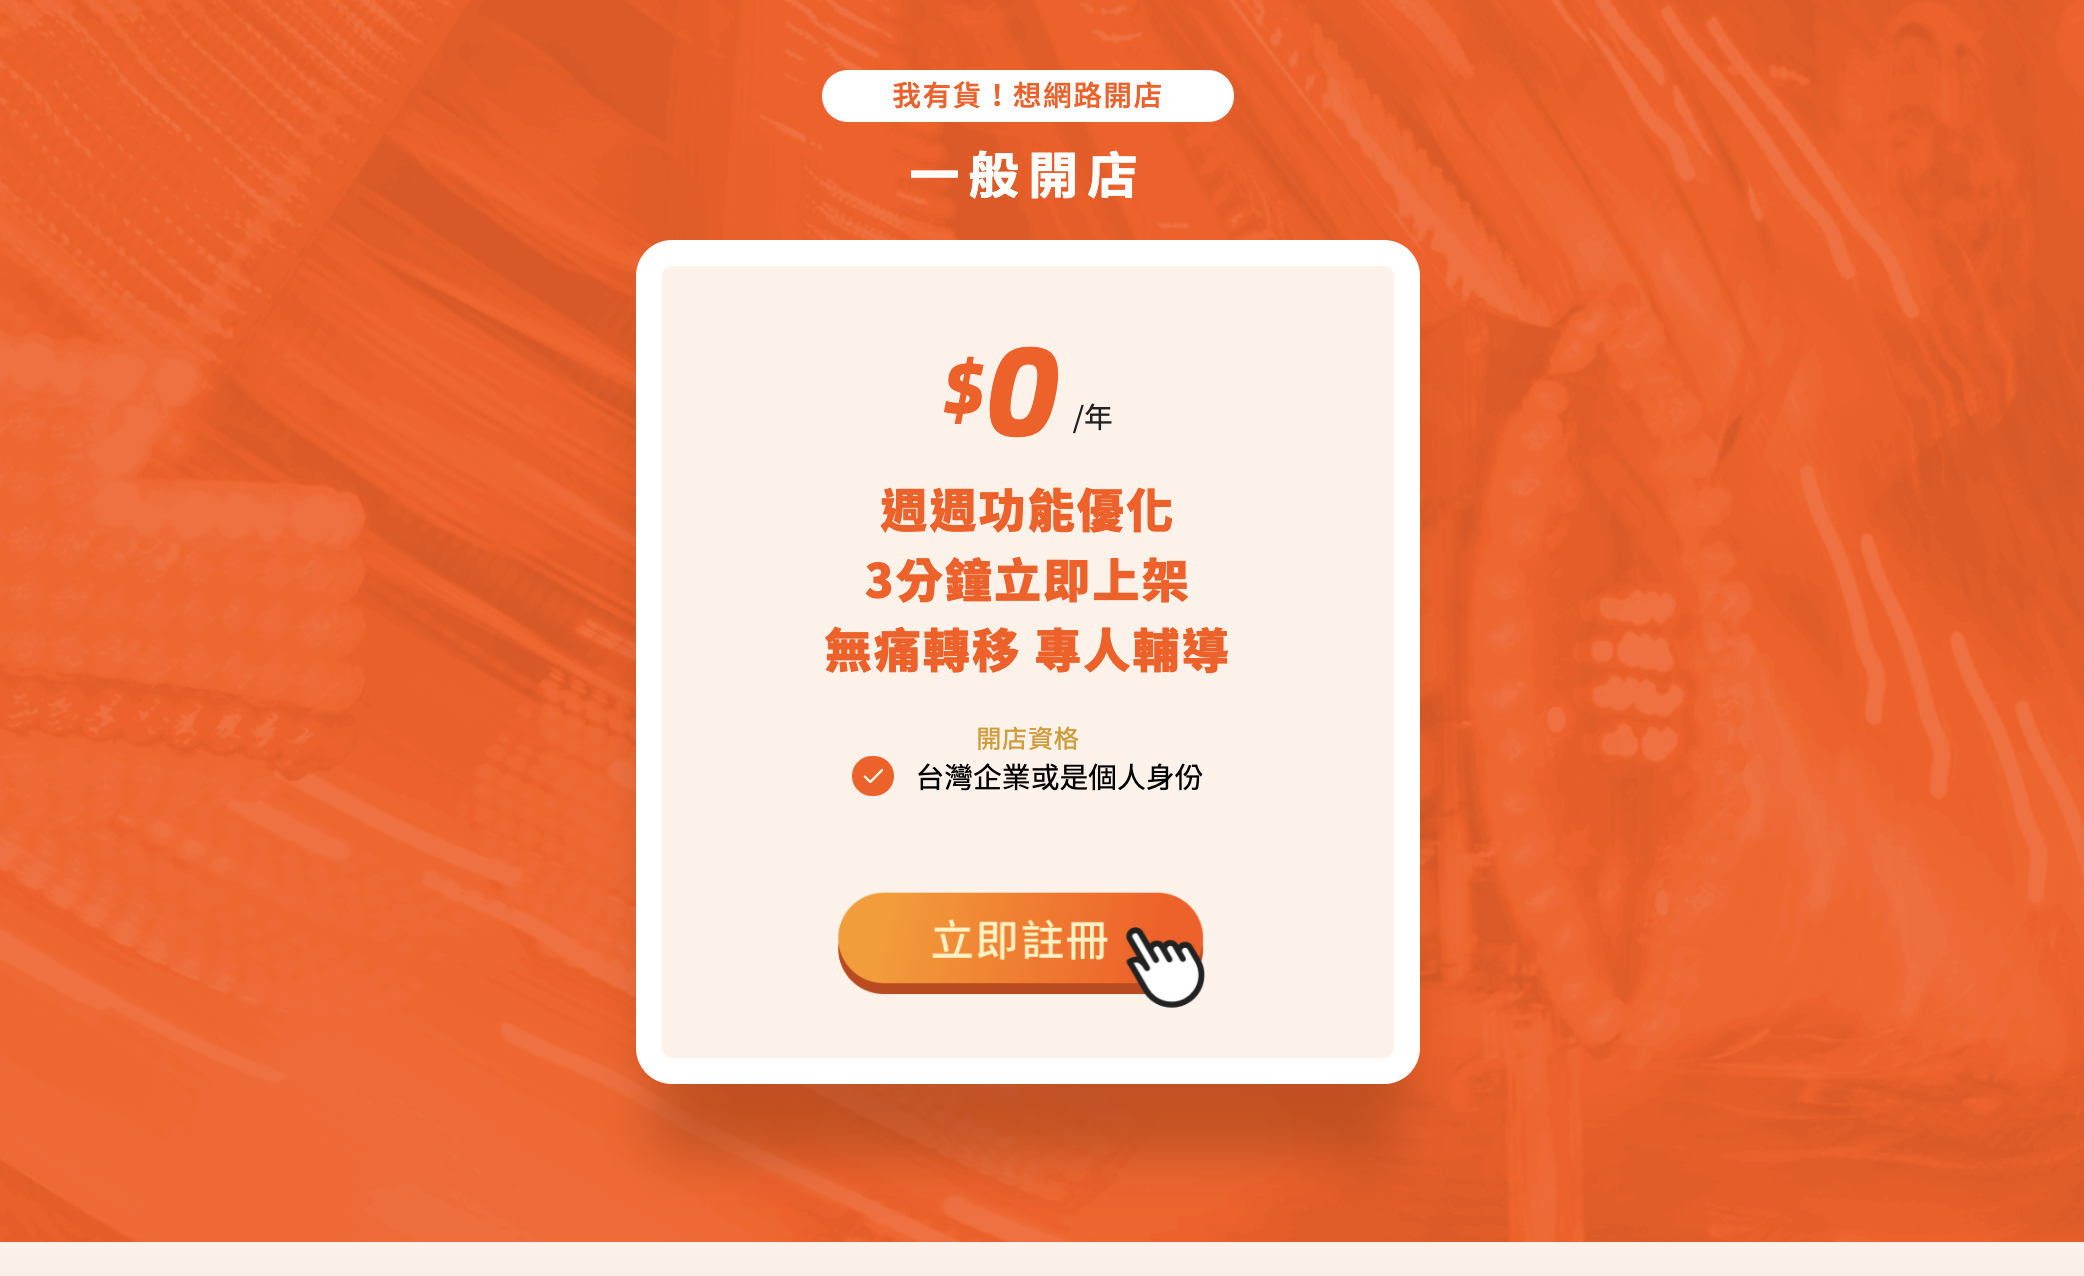 免費開網店推薦：淘寶台灣開店好簡單隨你開，手把手教你增加收入。